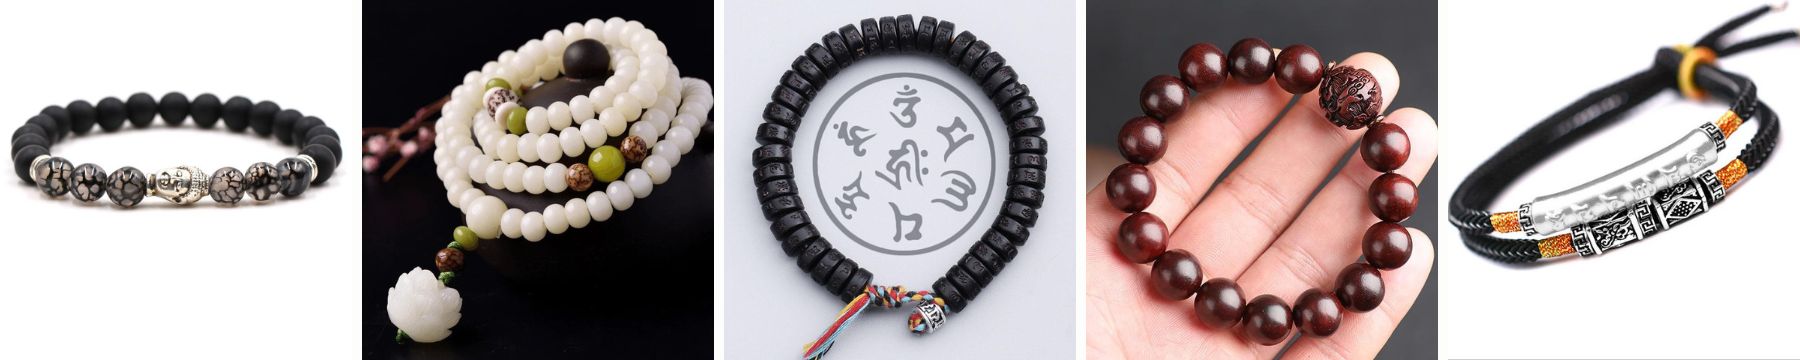 feng shui bracelets for wisdom